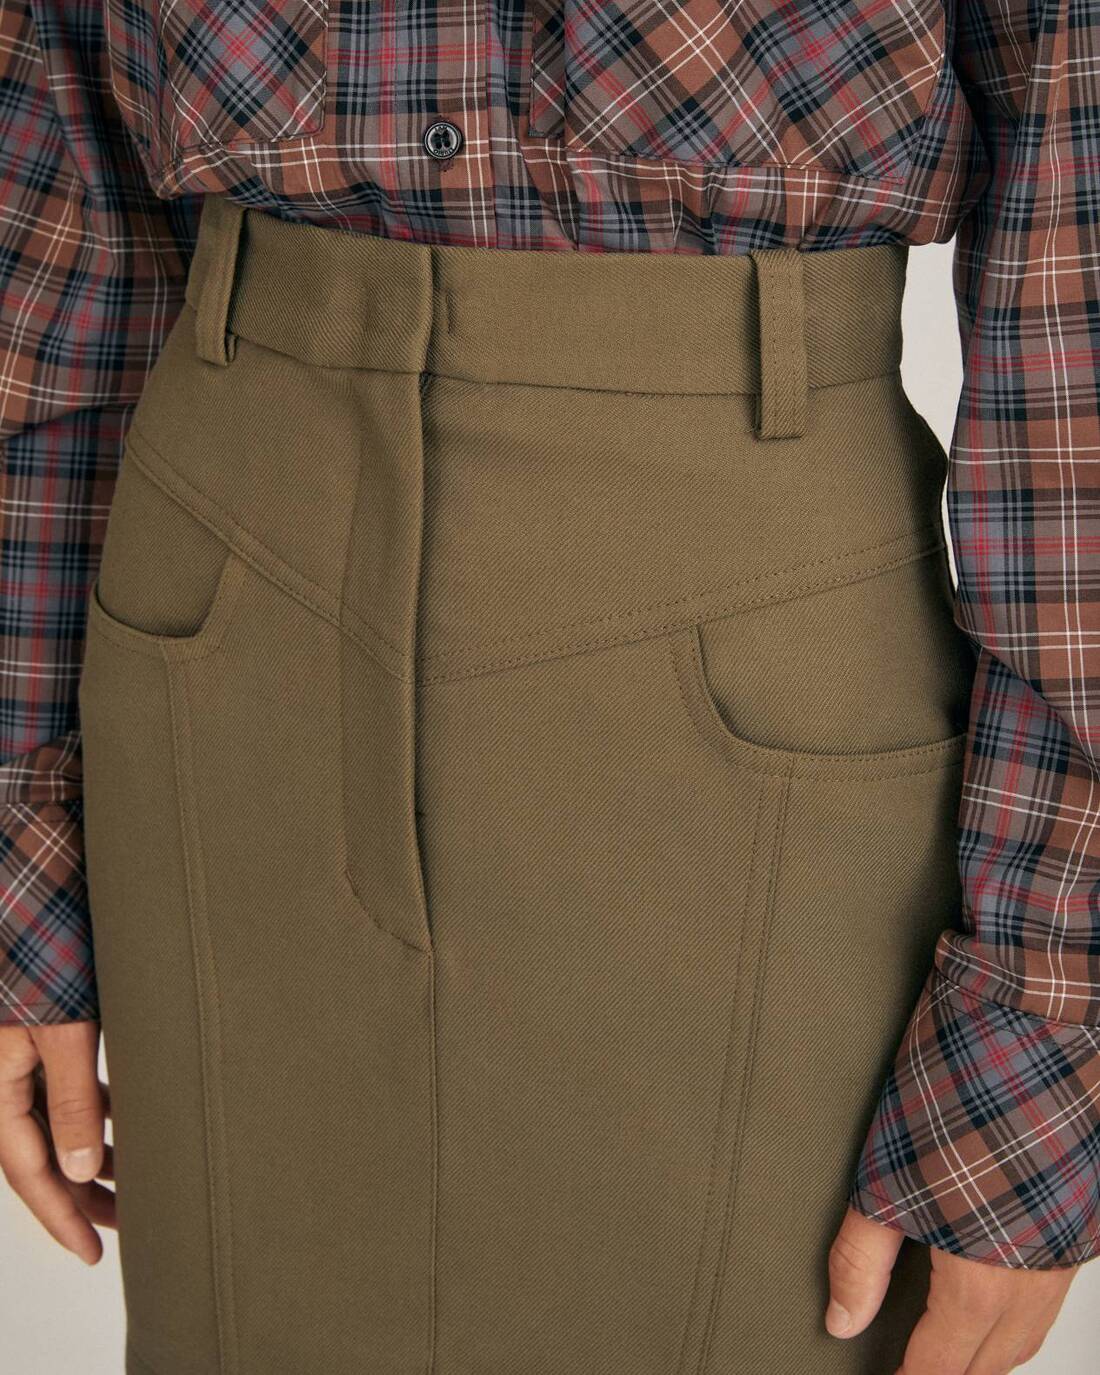 Utility style mini skirt